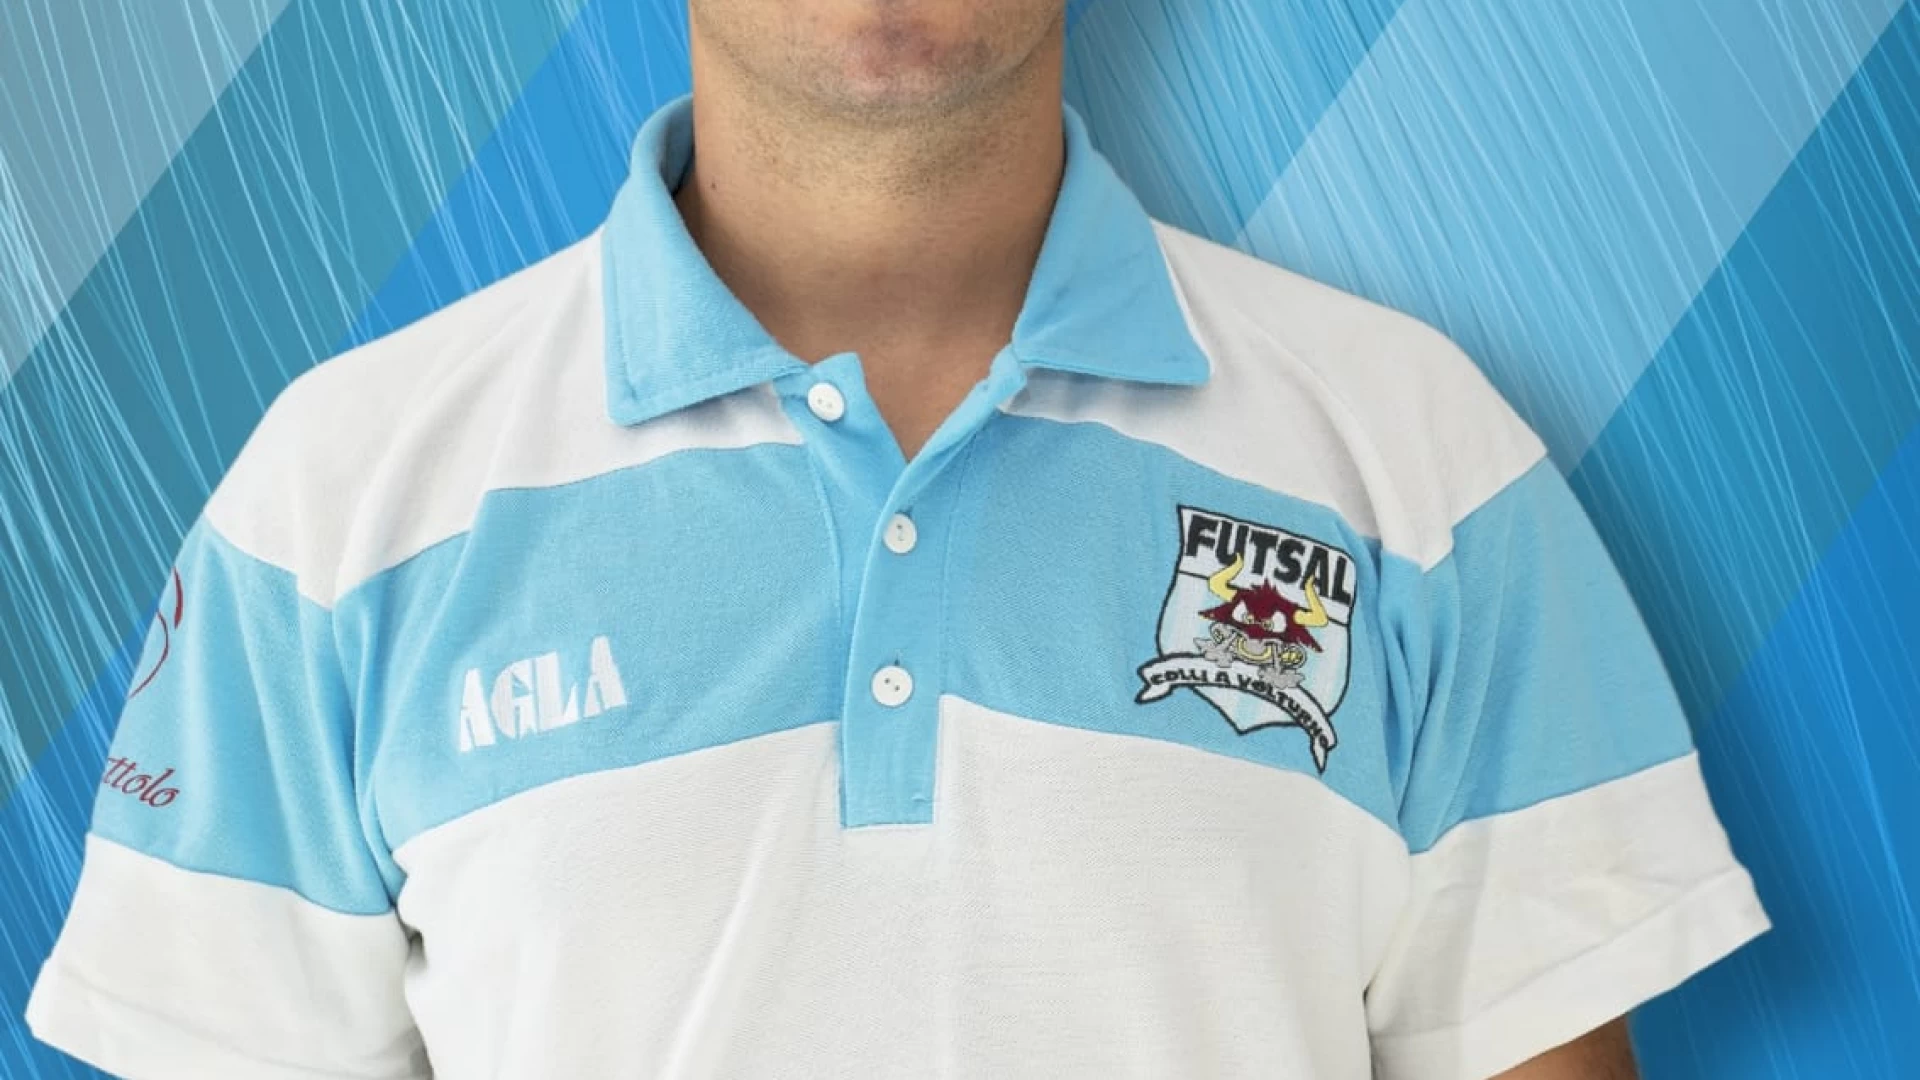 Calcio a 5: la Futsal Colli saluta mister Iannicelli. “Impresso nella storia della nostra squdra”. Il comunicato ufficiale.